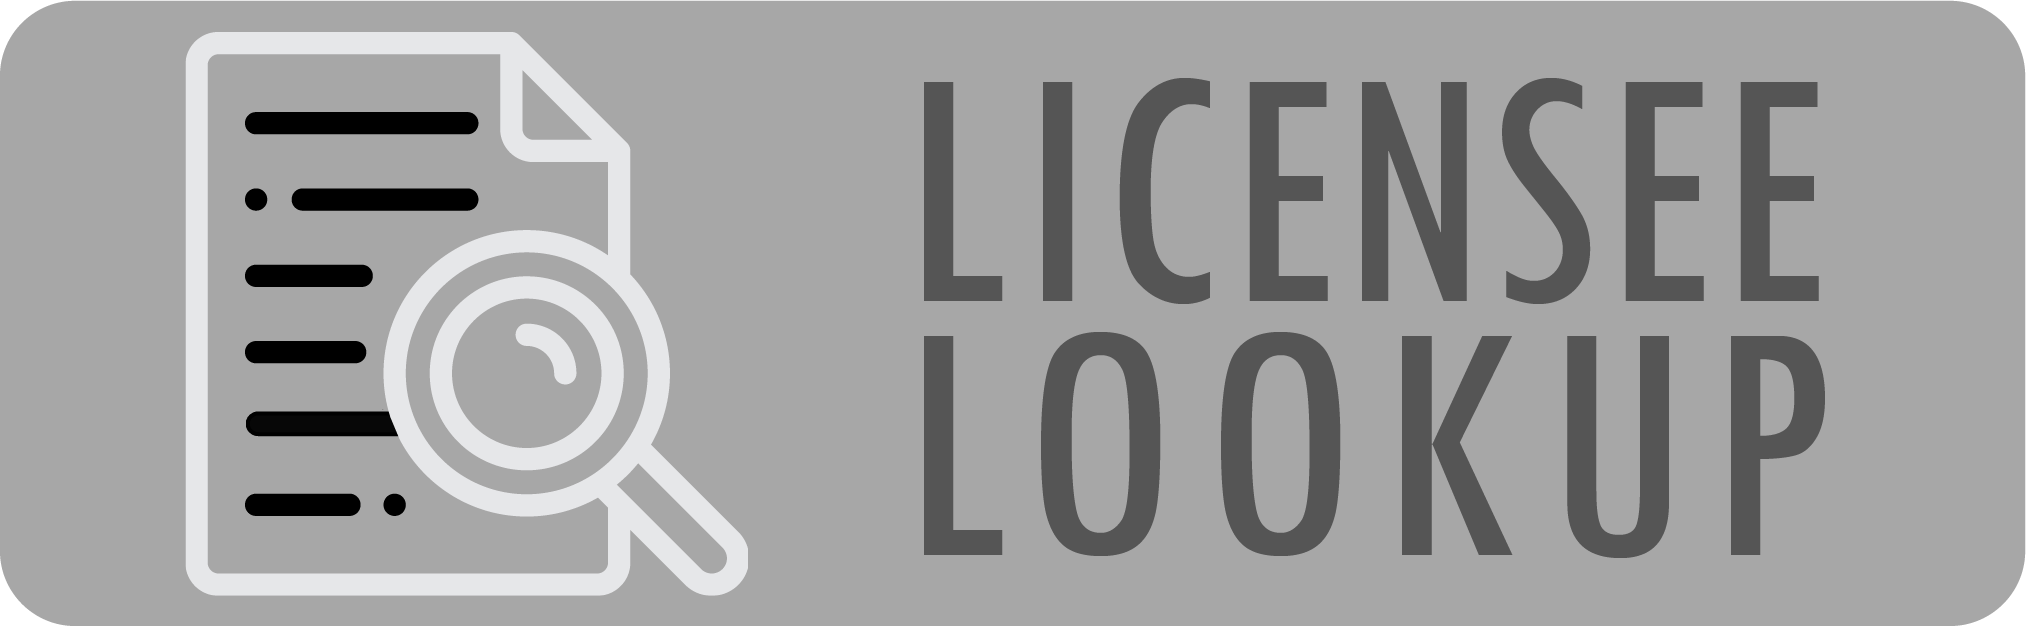 Licensee Lookup